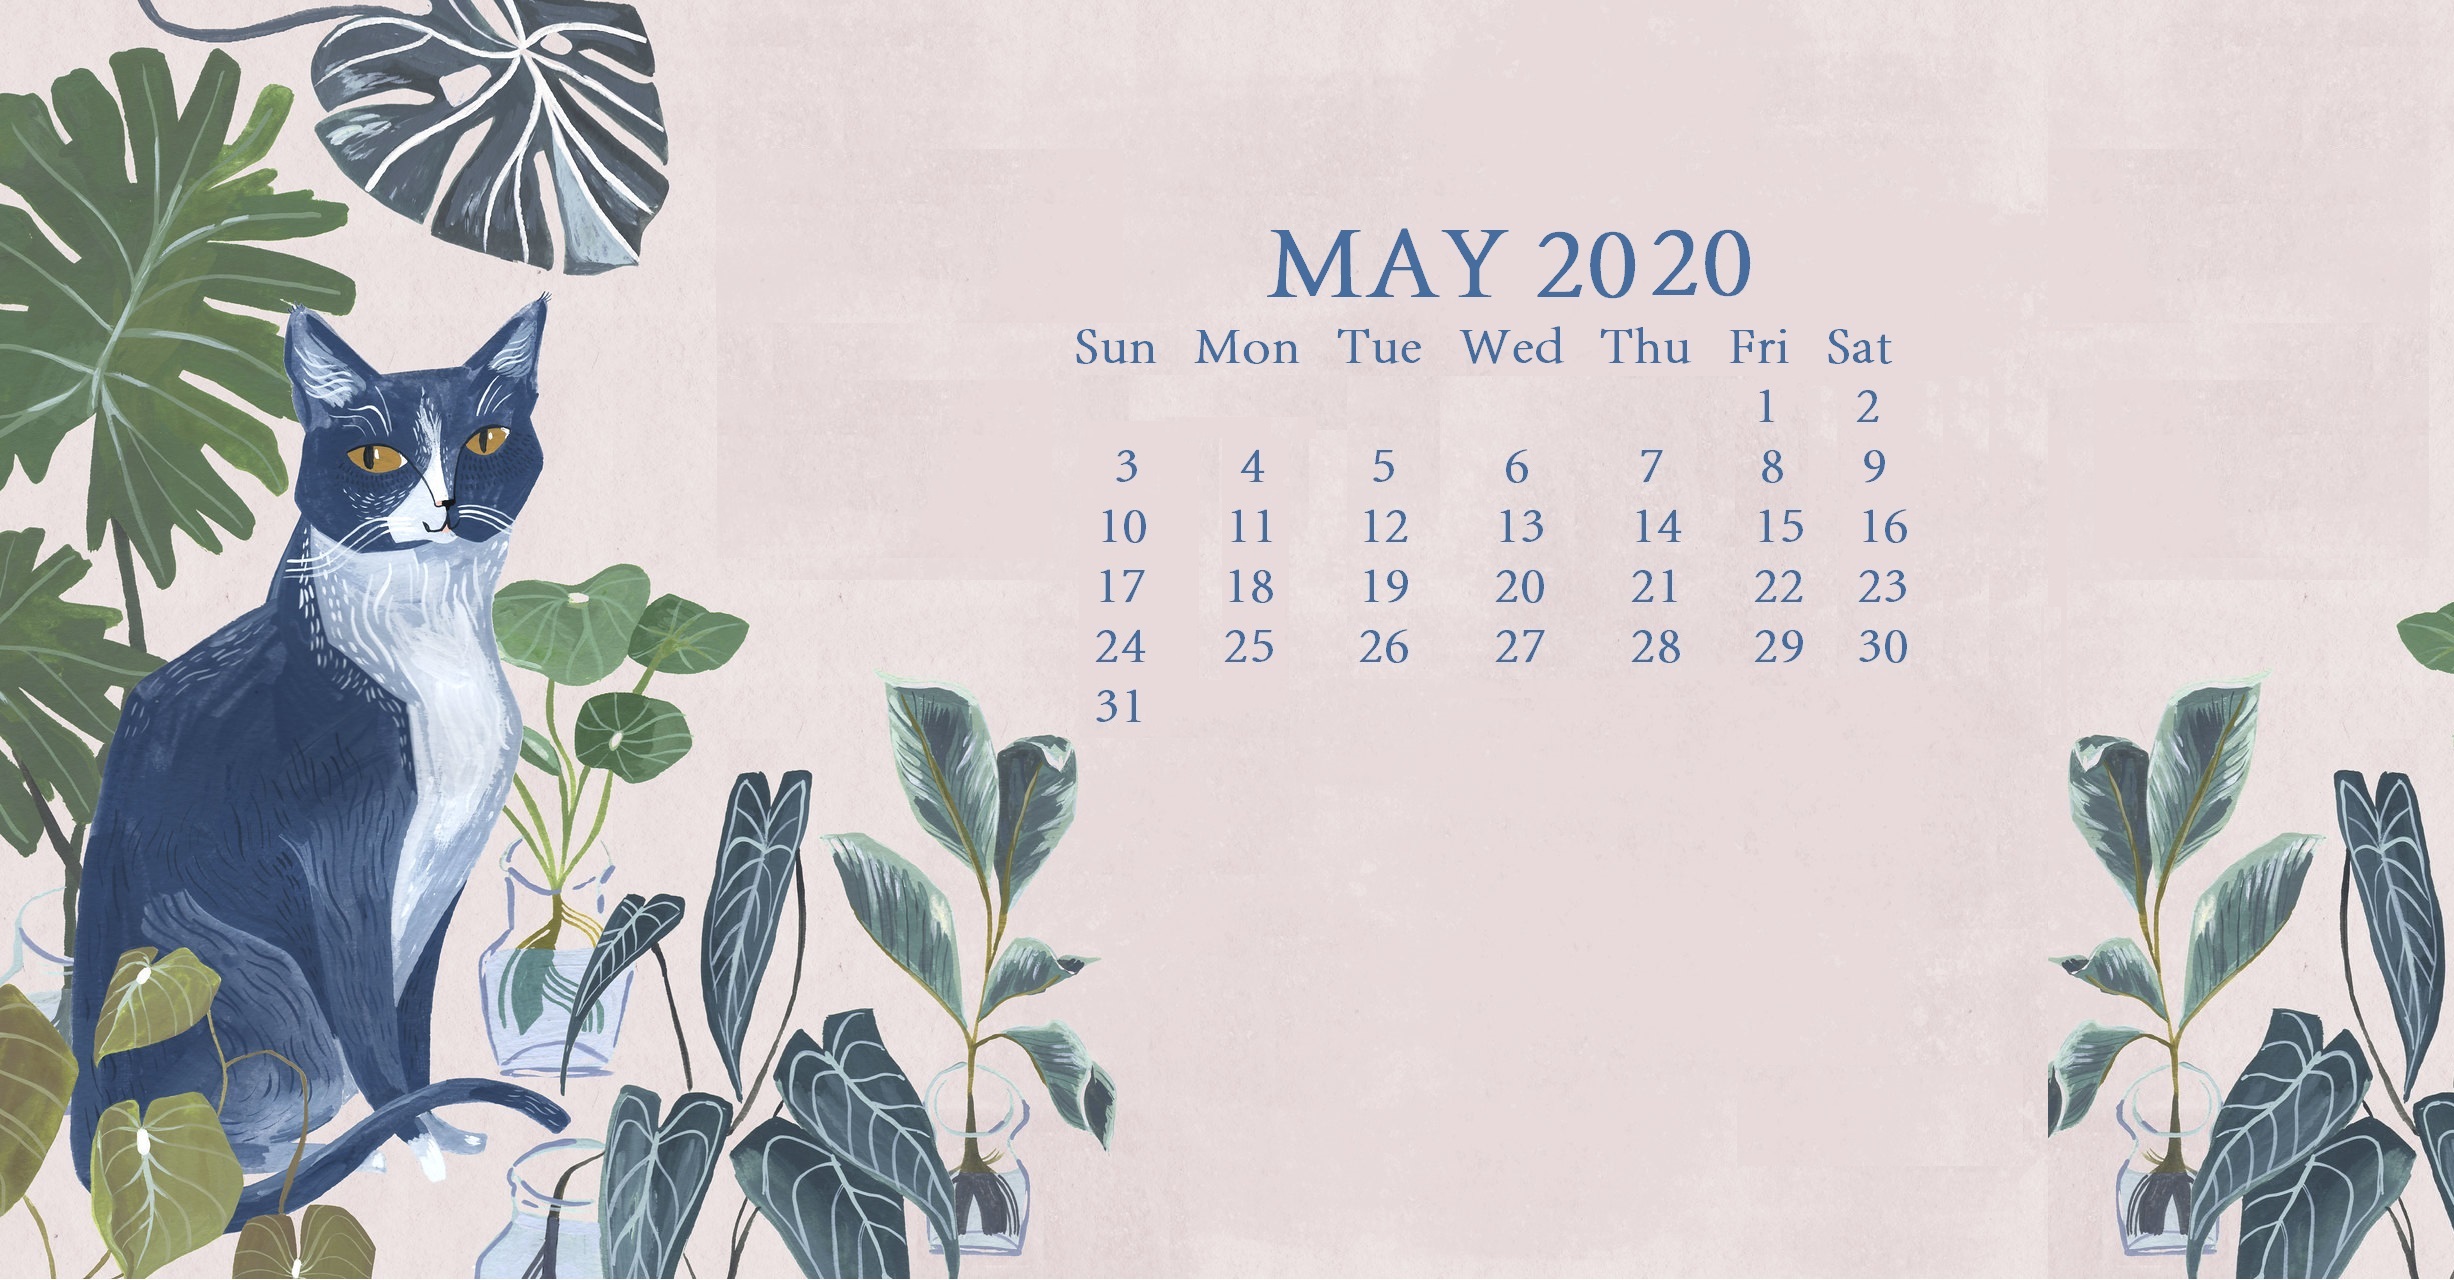 Cute 2020 Desktop Calendar Wallpaper - May Calendar Wallpaper 2020 , HD Wallpaper & Backgrounds